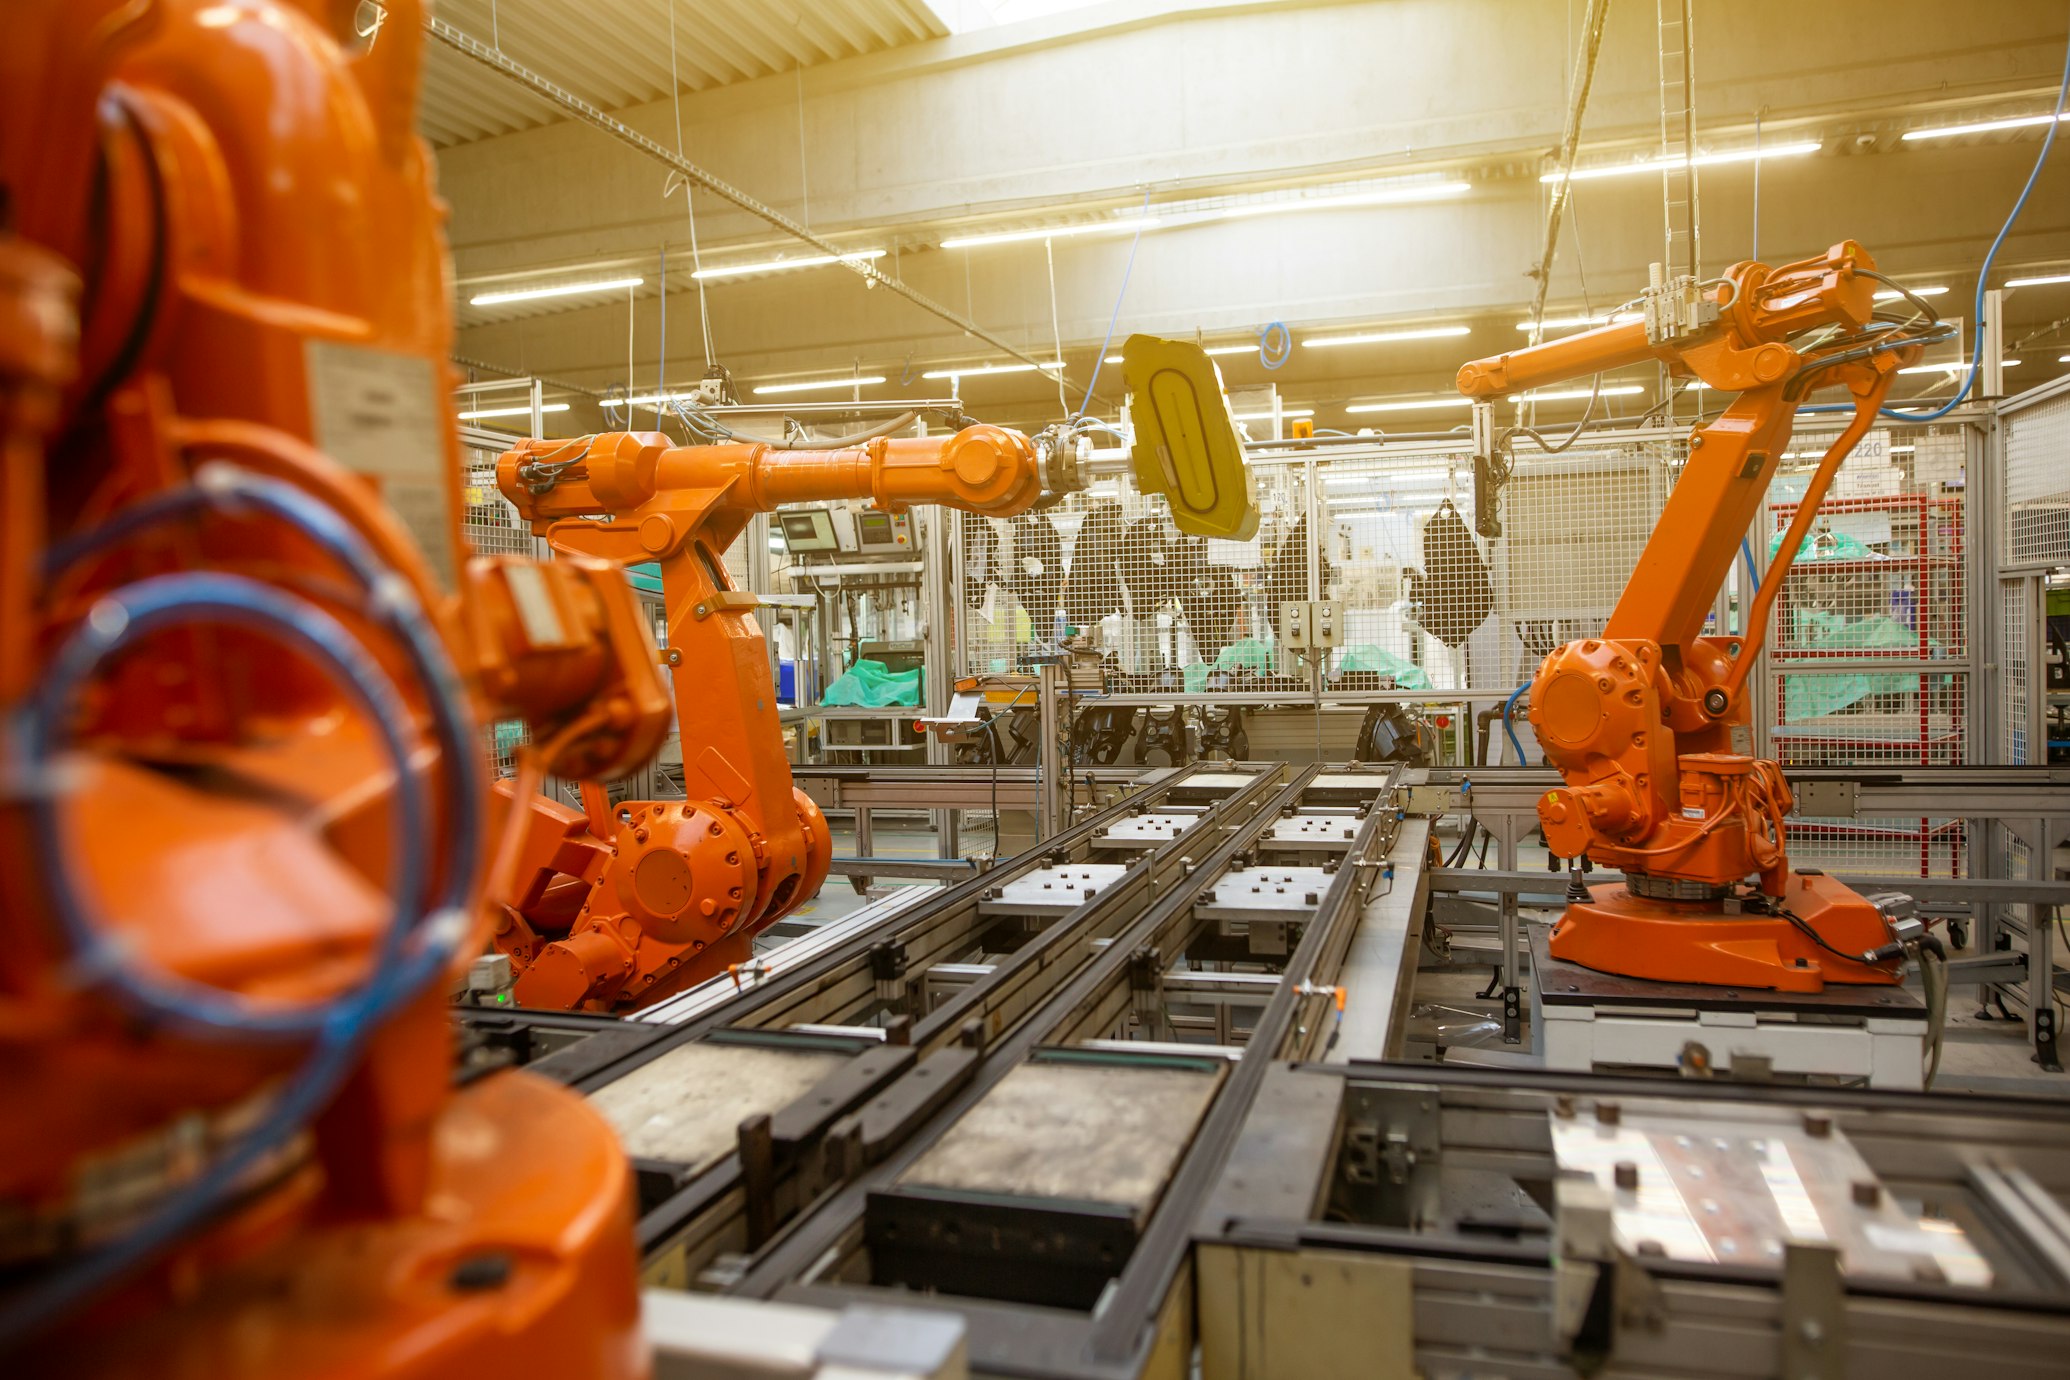 1. Industrial Robots